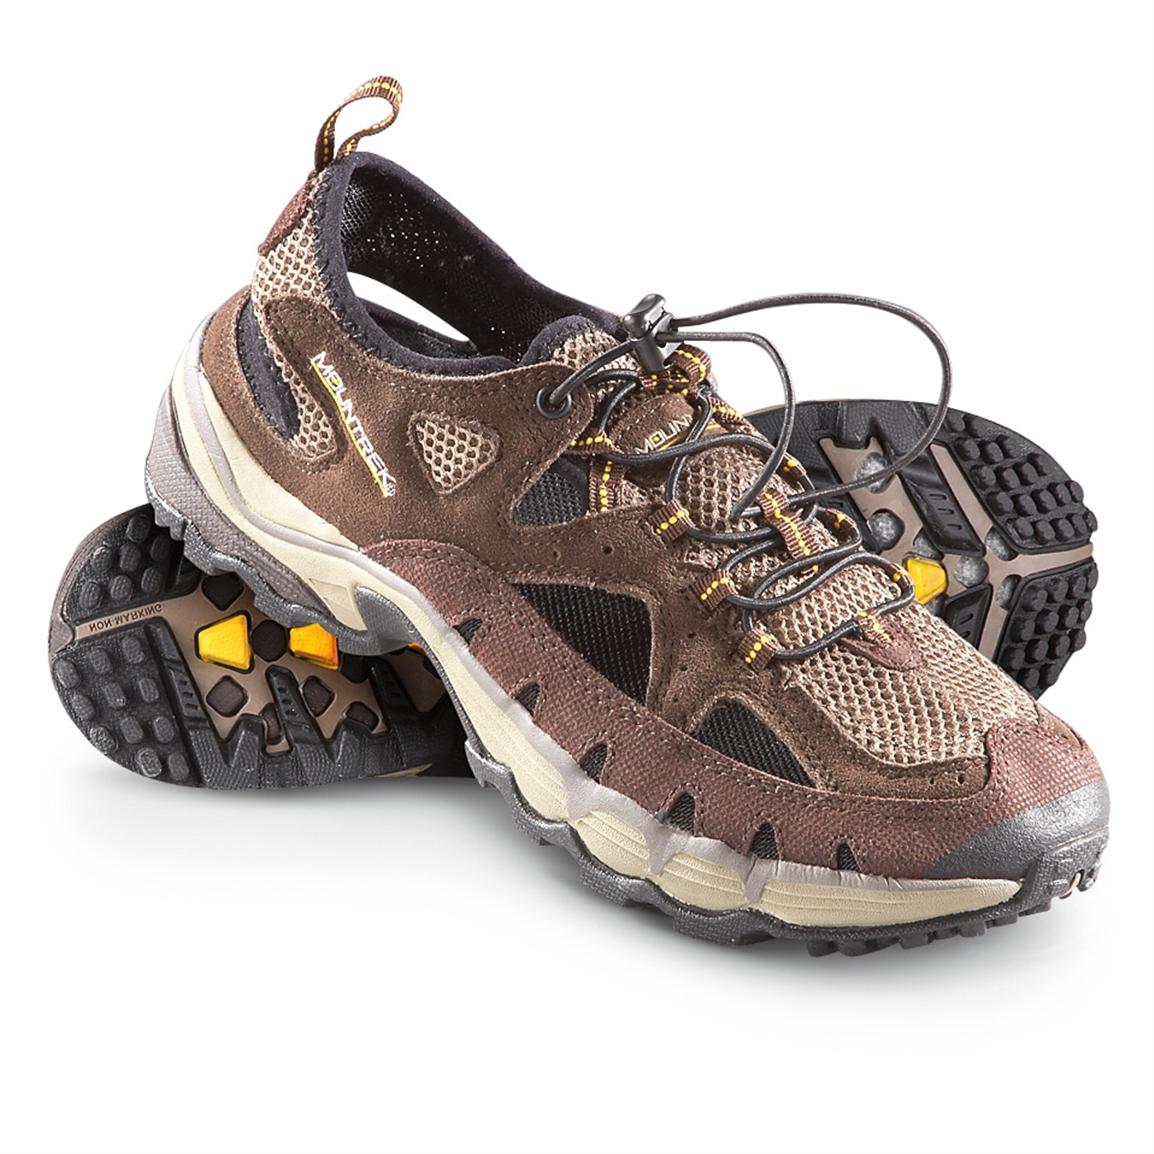 Men's Mountrek® Velocity Summit Hiking Shoes, Brown - 220415, Hiking ...